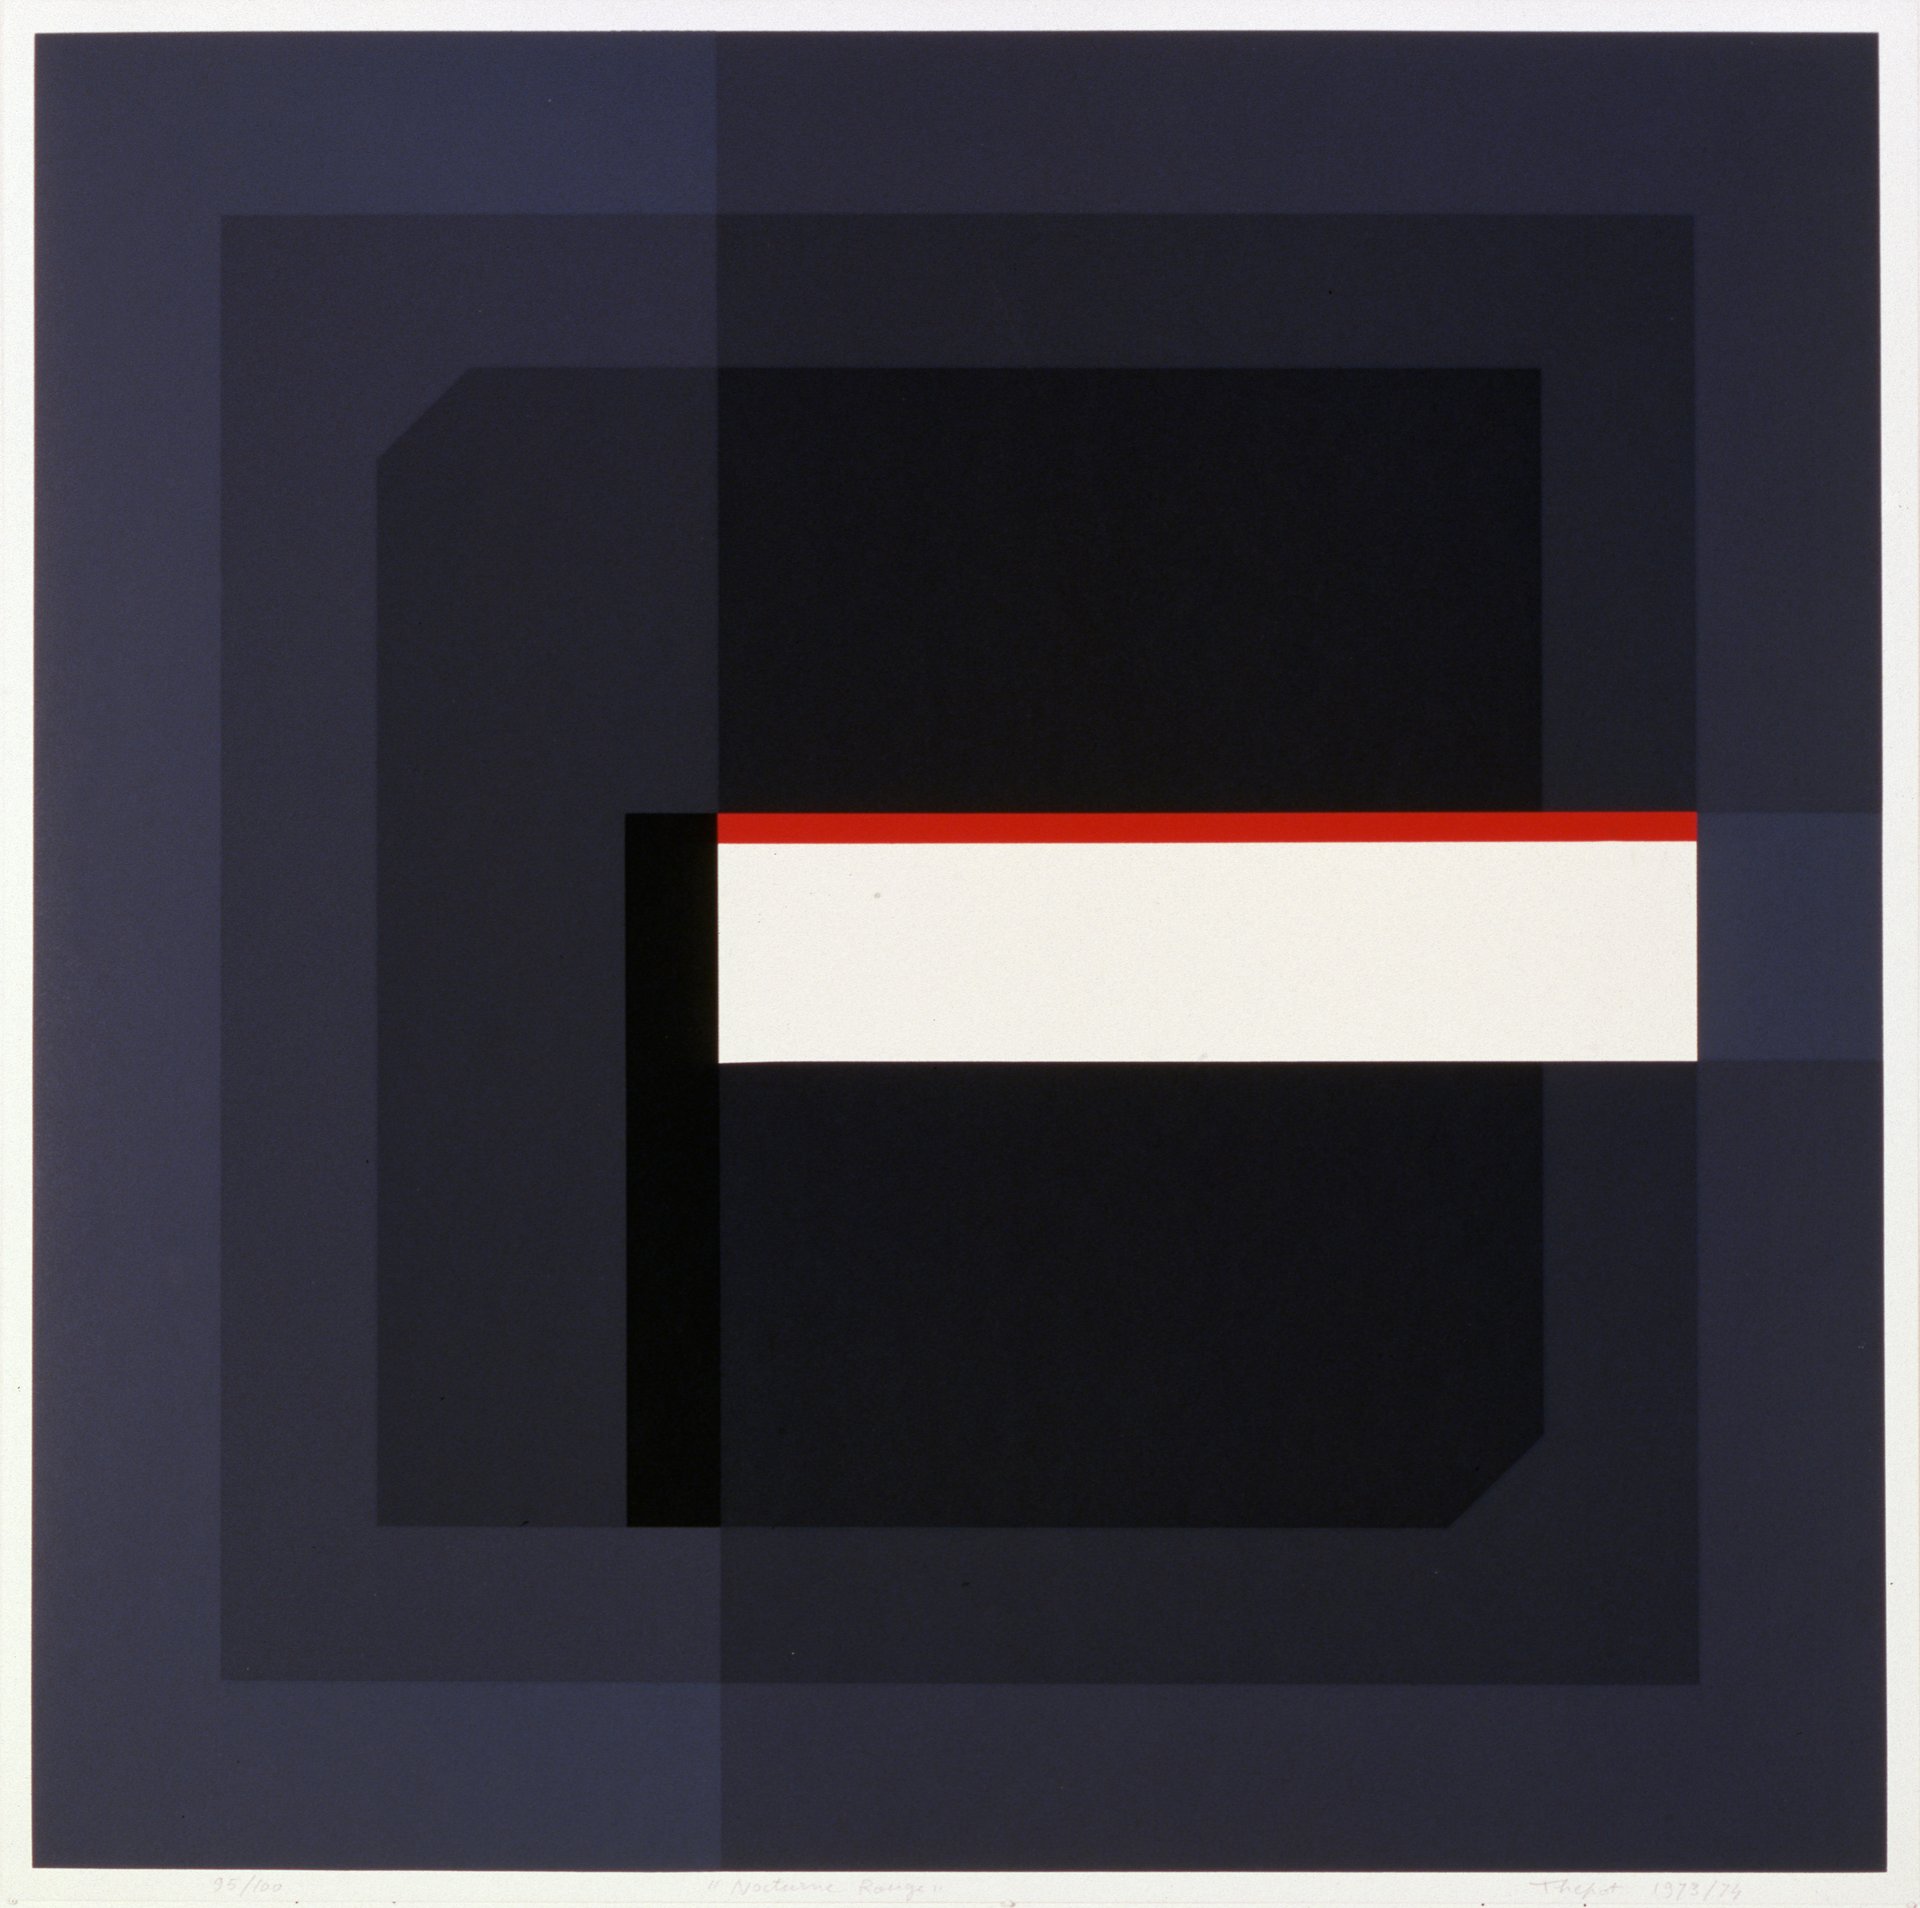 françois thépot, &quot;nocturne rouge&quot; (1973), silkscreen on paper, 60 x 60 cm